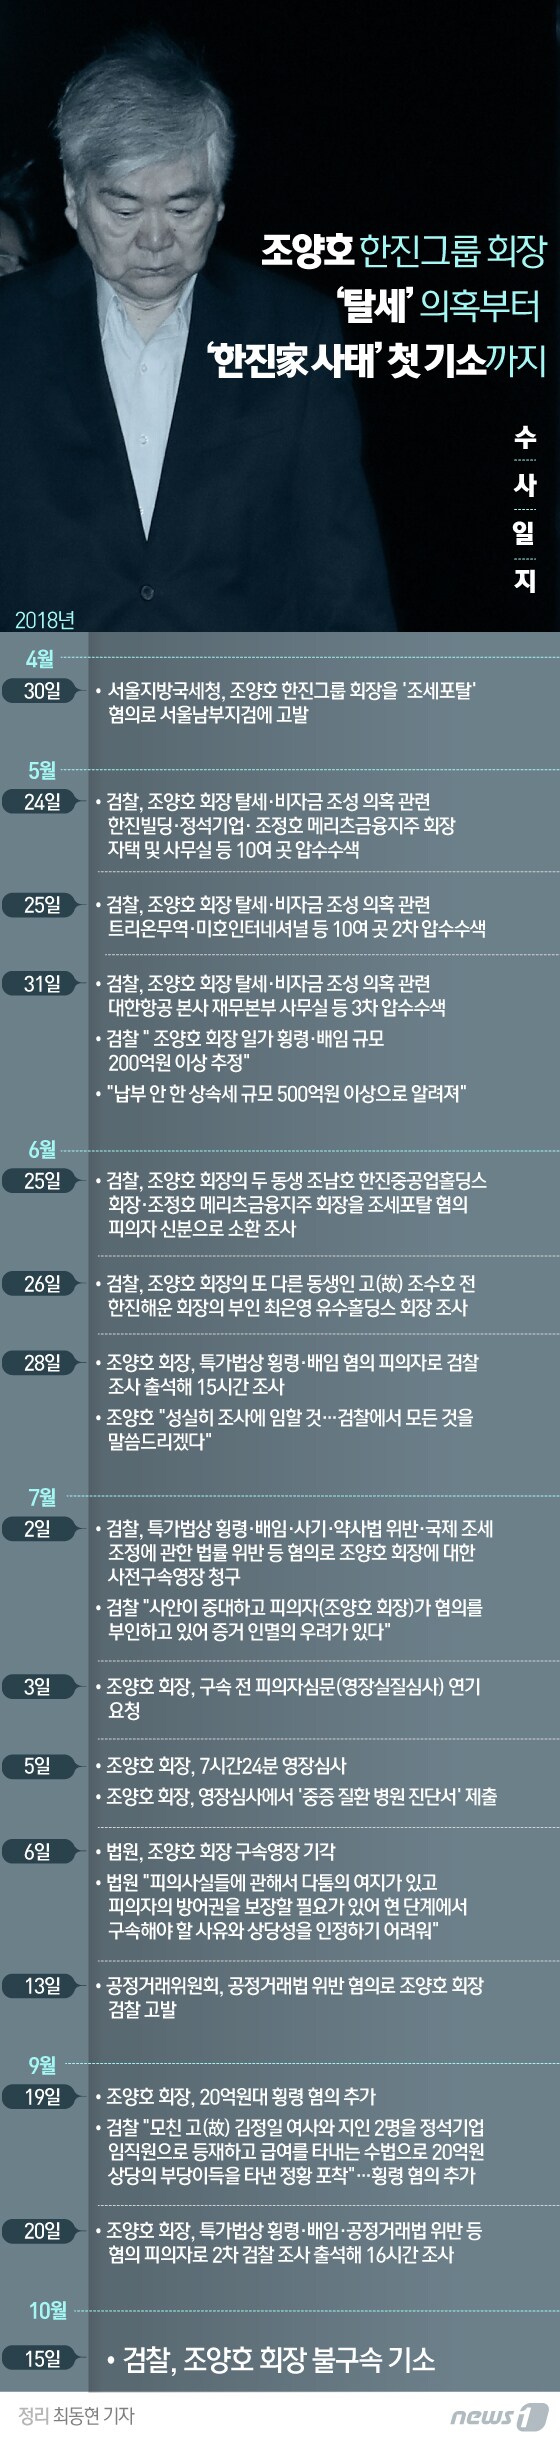 [그래픽뉴스] 조양호 회장 '탈세' 의혹부터 불구속 기소까지